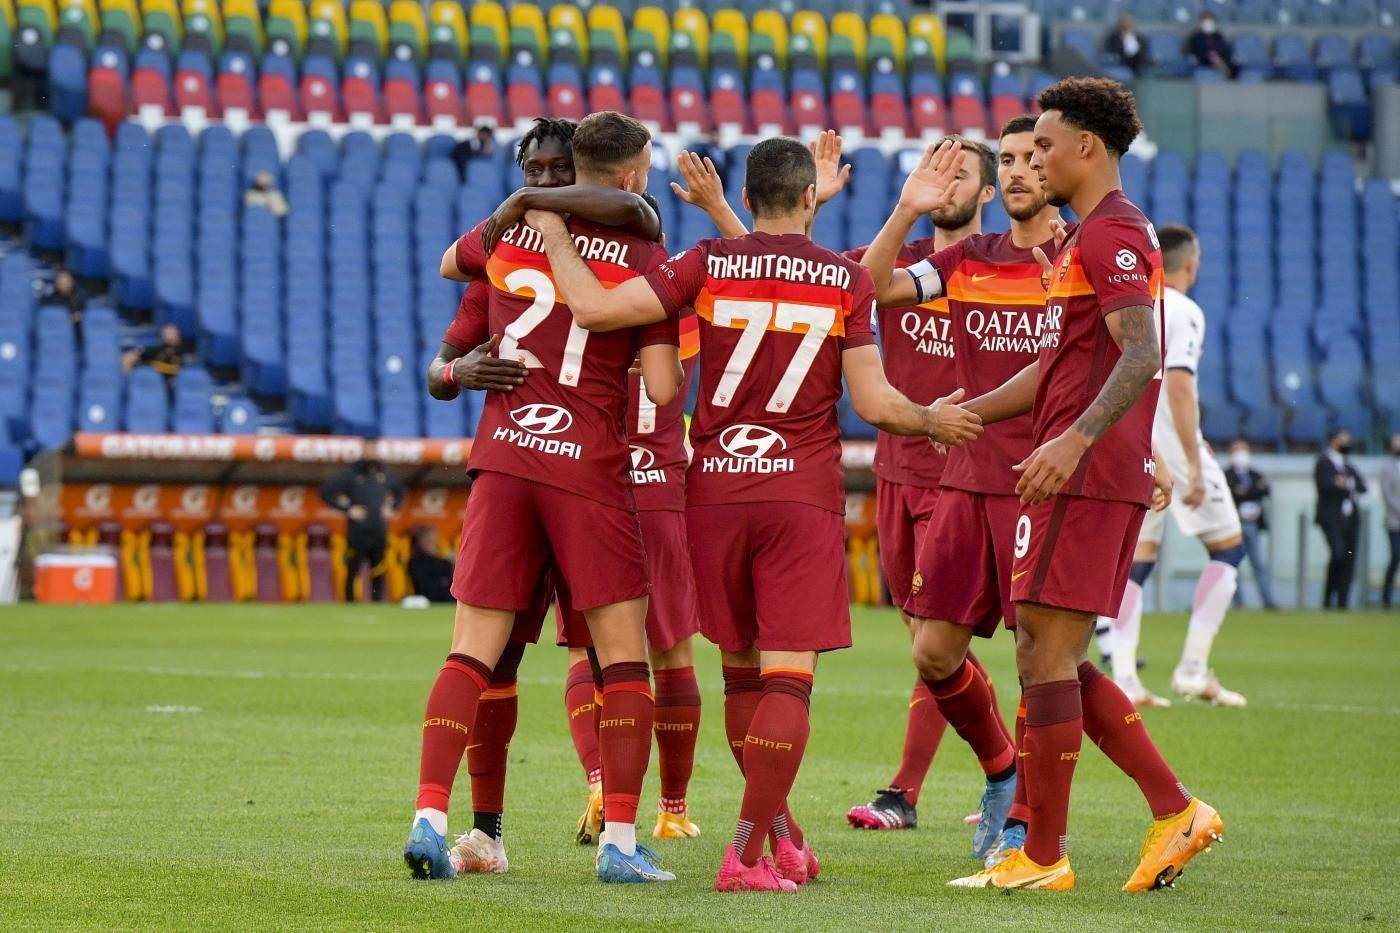 La squadra esulta dopo un gol contro il Crotone, di LaPresse